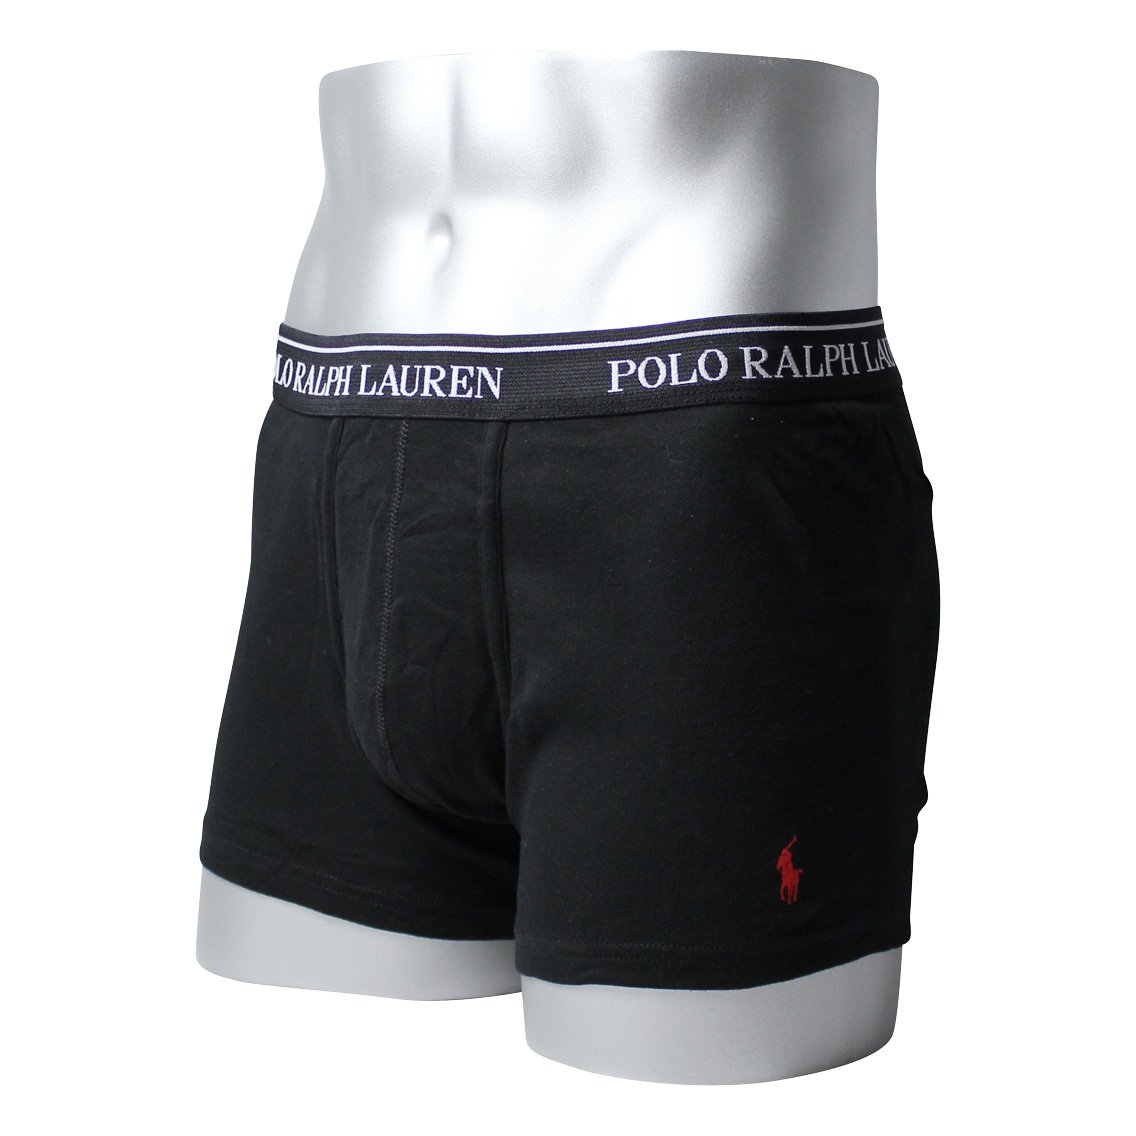 Polo Ralph Lauren(ポロラルフローレン)[RCTRP3-PBD]:ボクサーパンツ,男性下着,インナーの通販